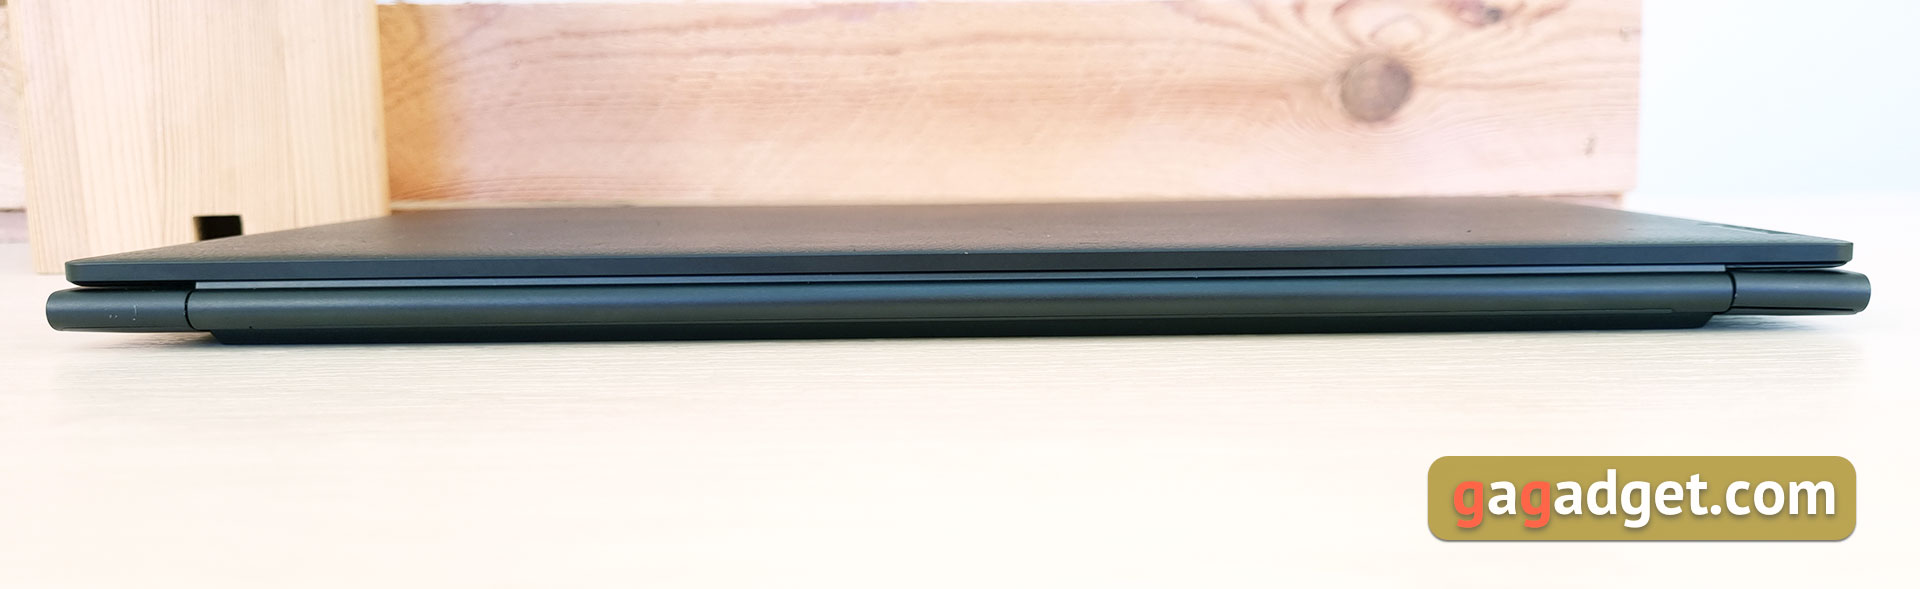 Lenovo Yoga Slim 9i Laptop Test-12